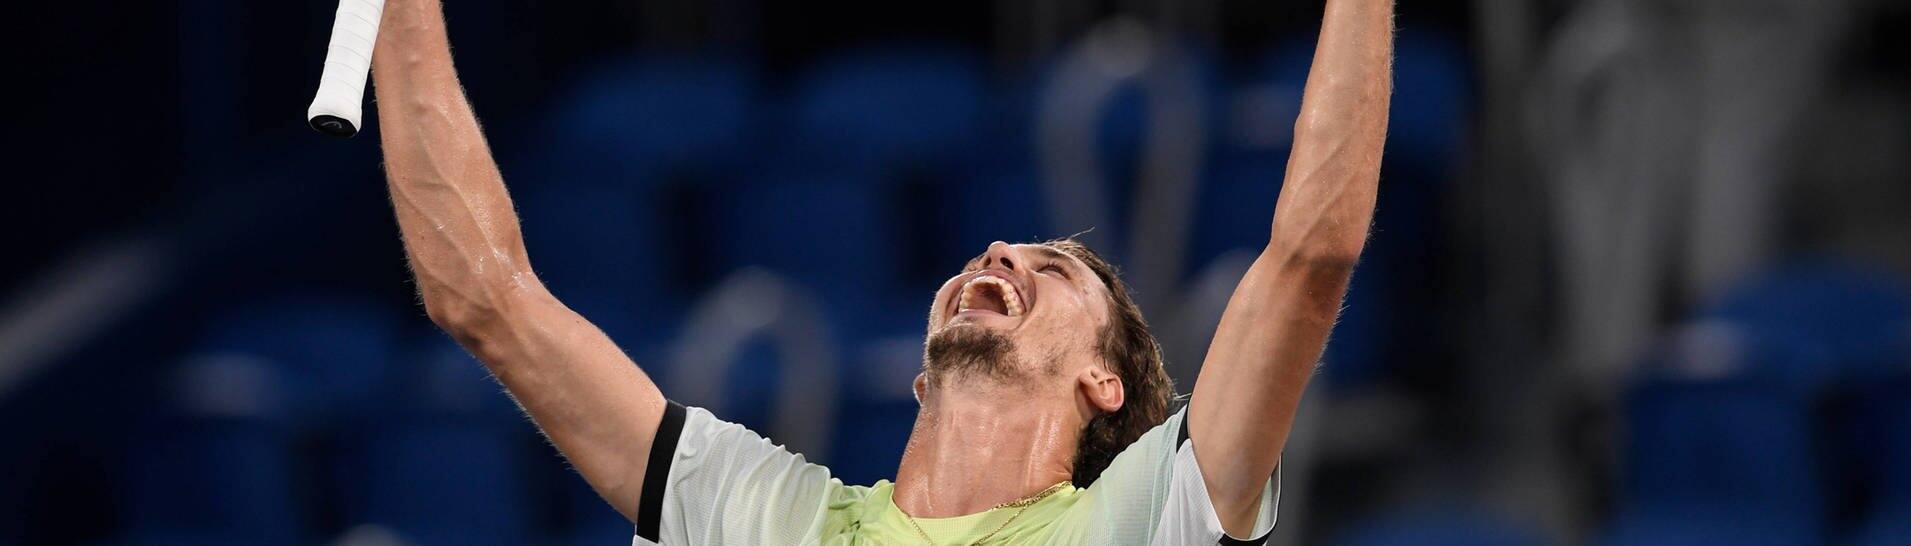 Alexander Zverev feiert seinen Sieg. (Foto: IMAGO, imago images/Paul Zimmer)